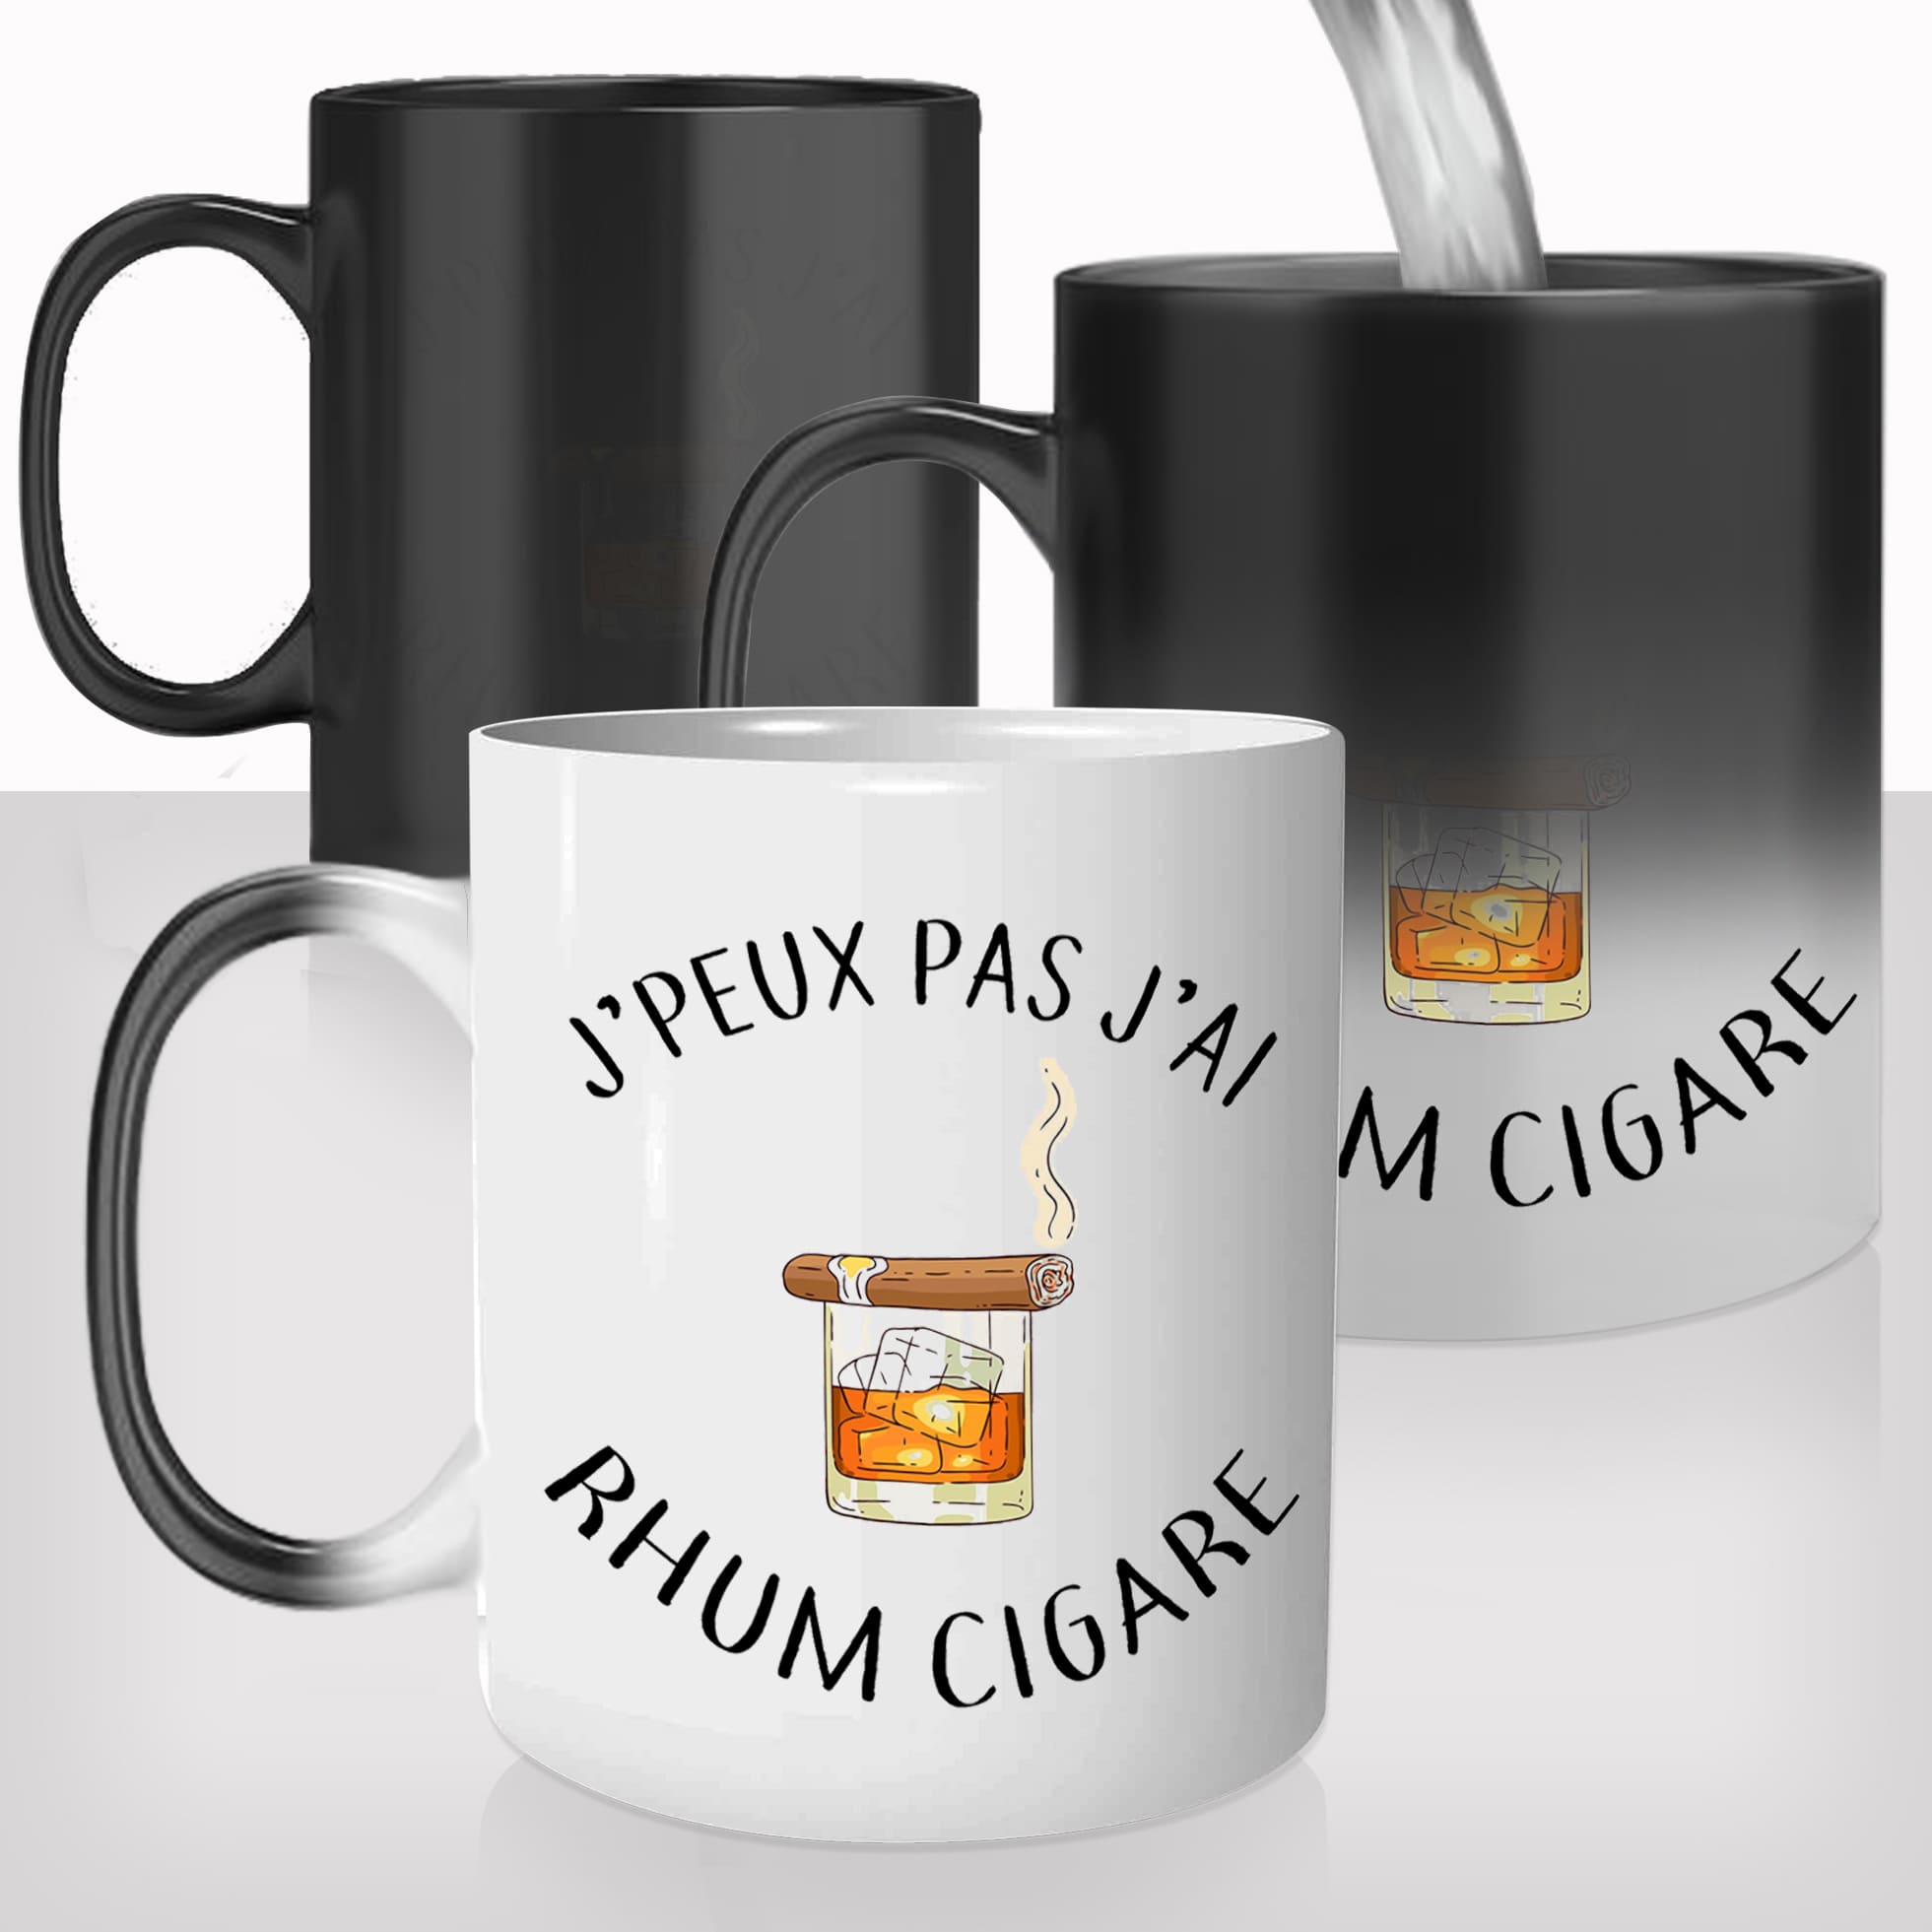 mug-magique-tasse-magic-thermo-reactif-jpeux-pas-jai-rhum-cigare-homme-viril-copains-potes-photo-personnalisable-cadeau-original-fun